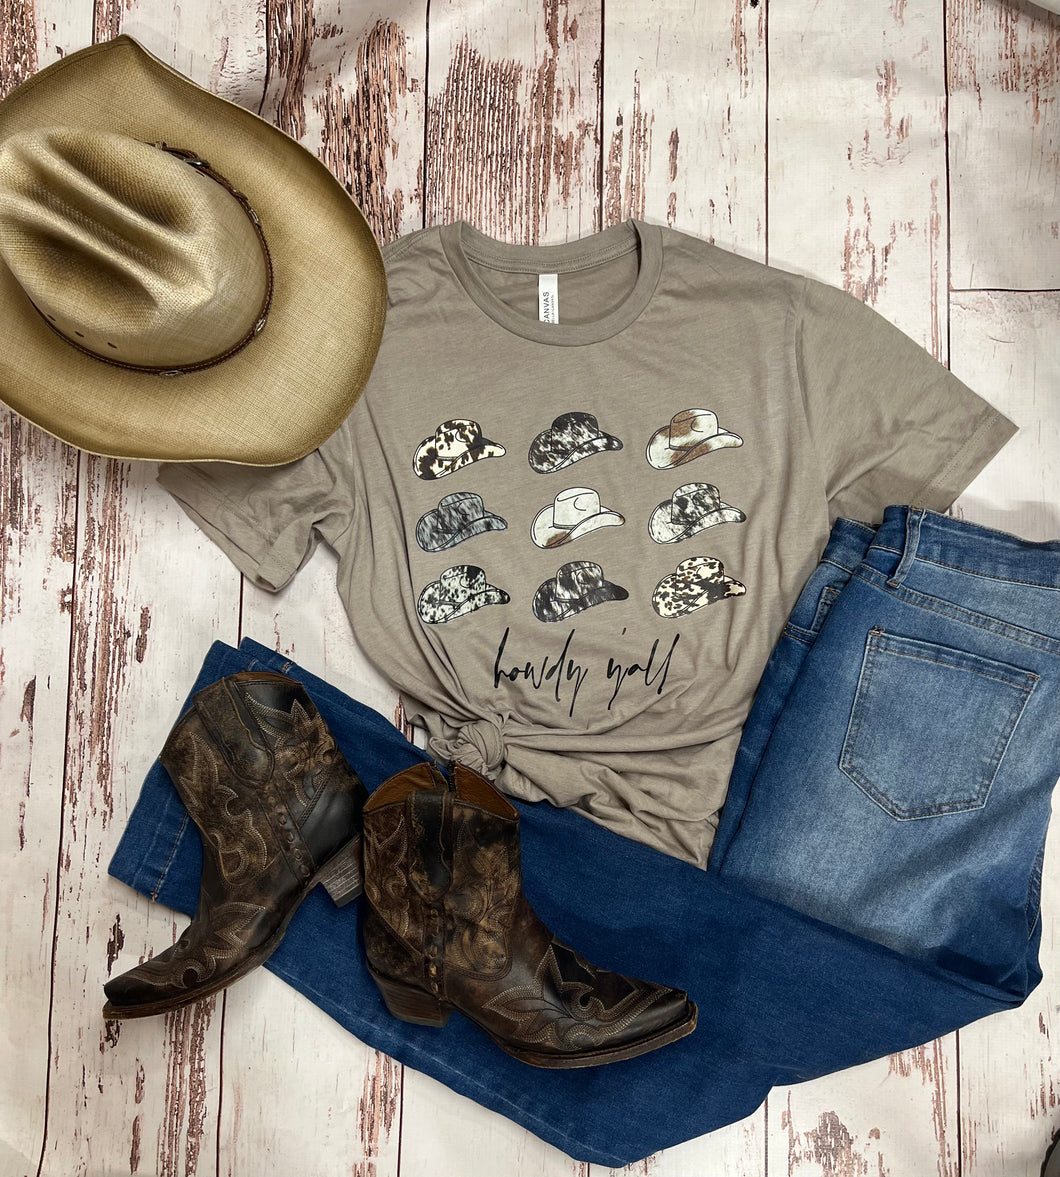 Cowboy hats -Hey y’all